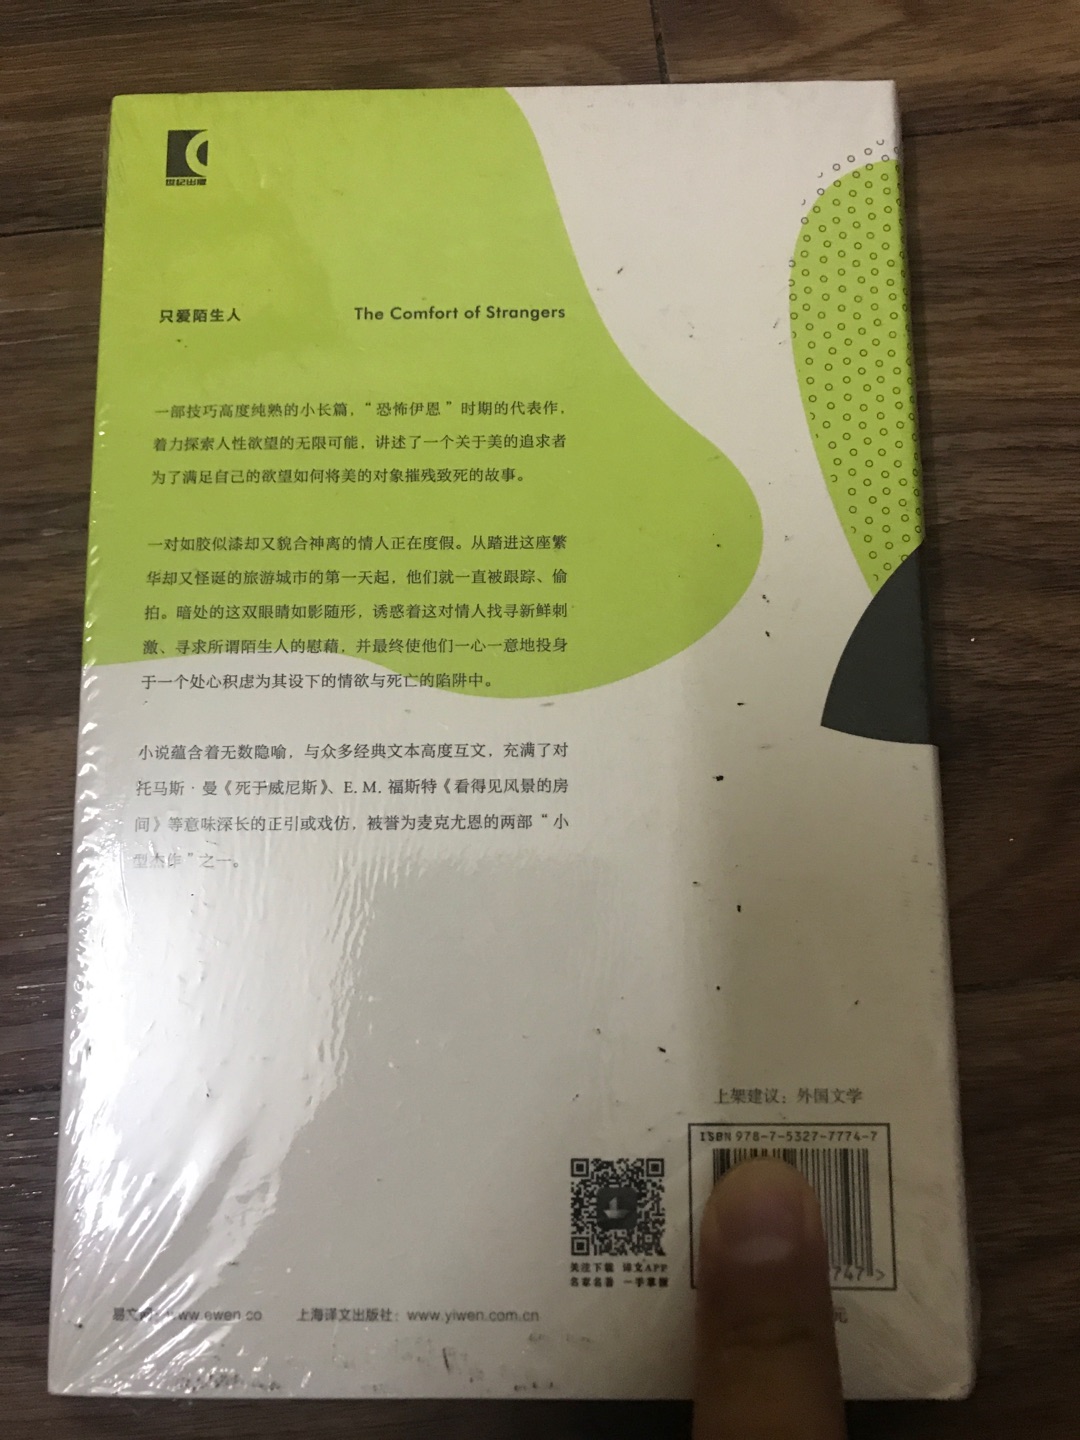 上海译文出版社出版的麦克尤恩作品集之《只爱陌生人》，麦克尤恩在英国文坛堪称奇迹。这套书均是32开本的硬壳精装，方便携带阅读，印刷精美，字迹清楚，行间距便于阅读，值得推荐。